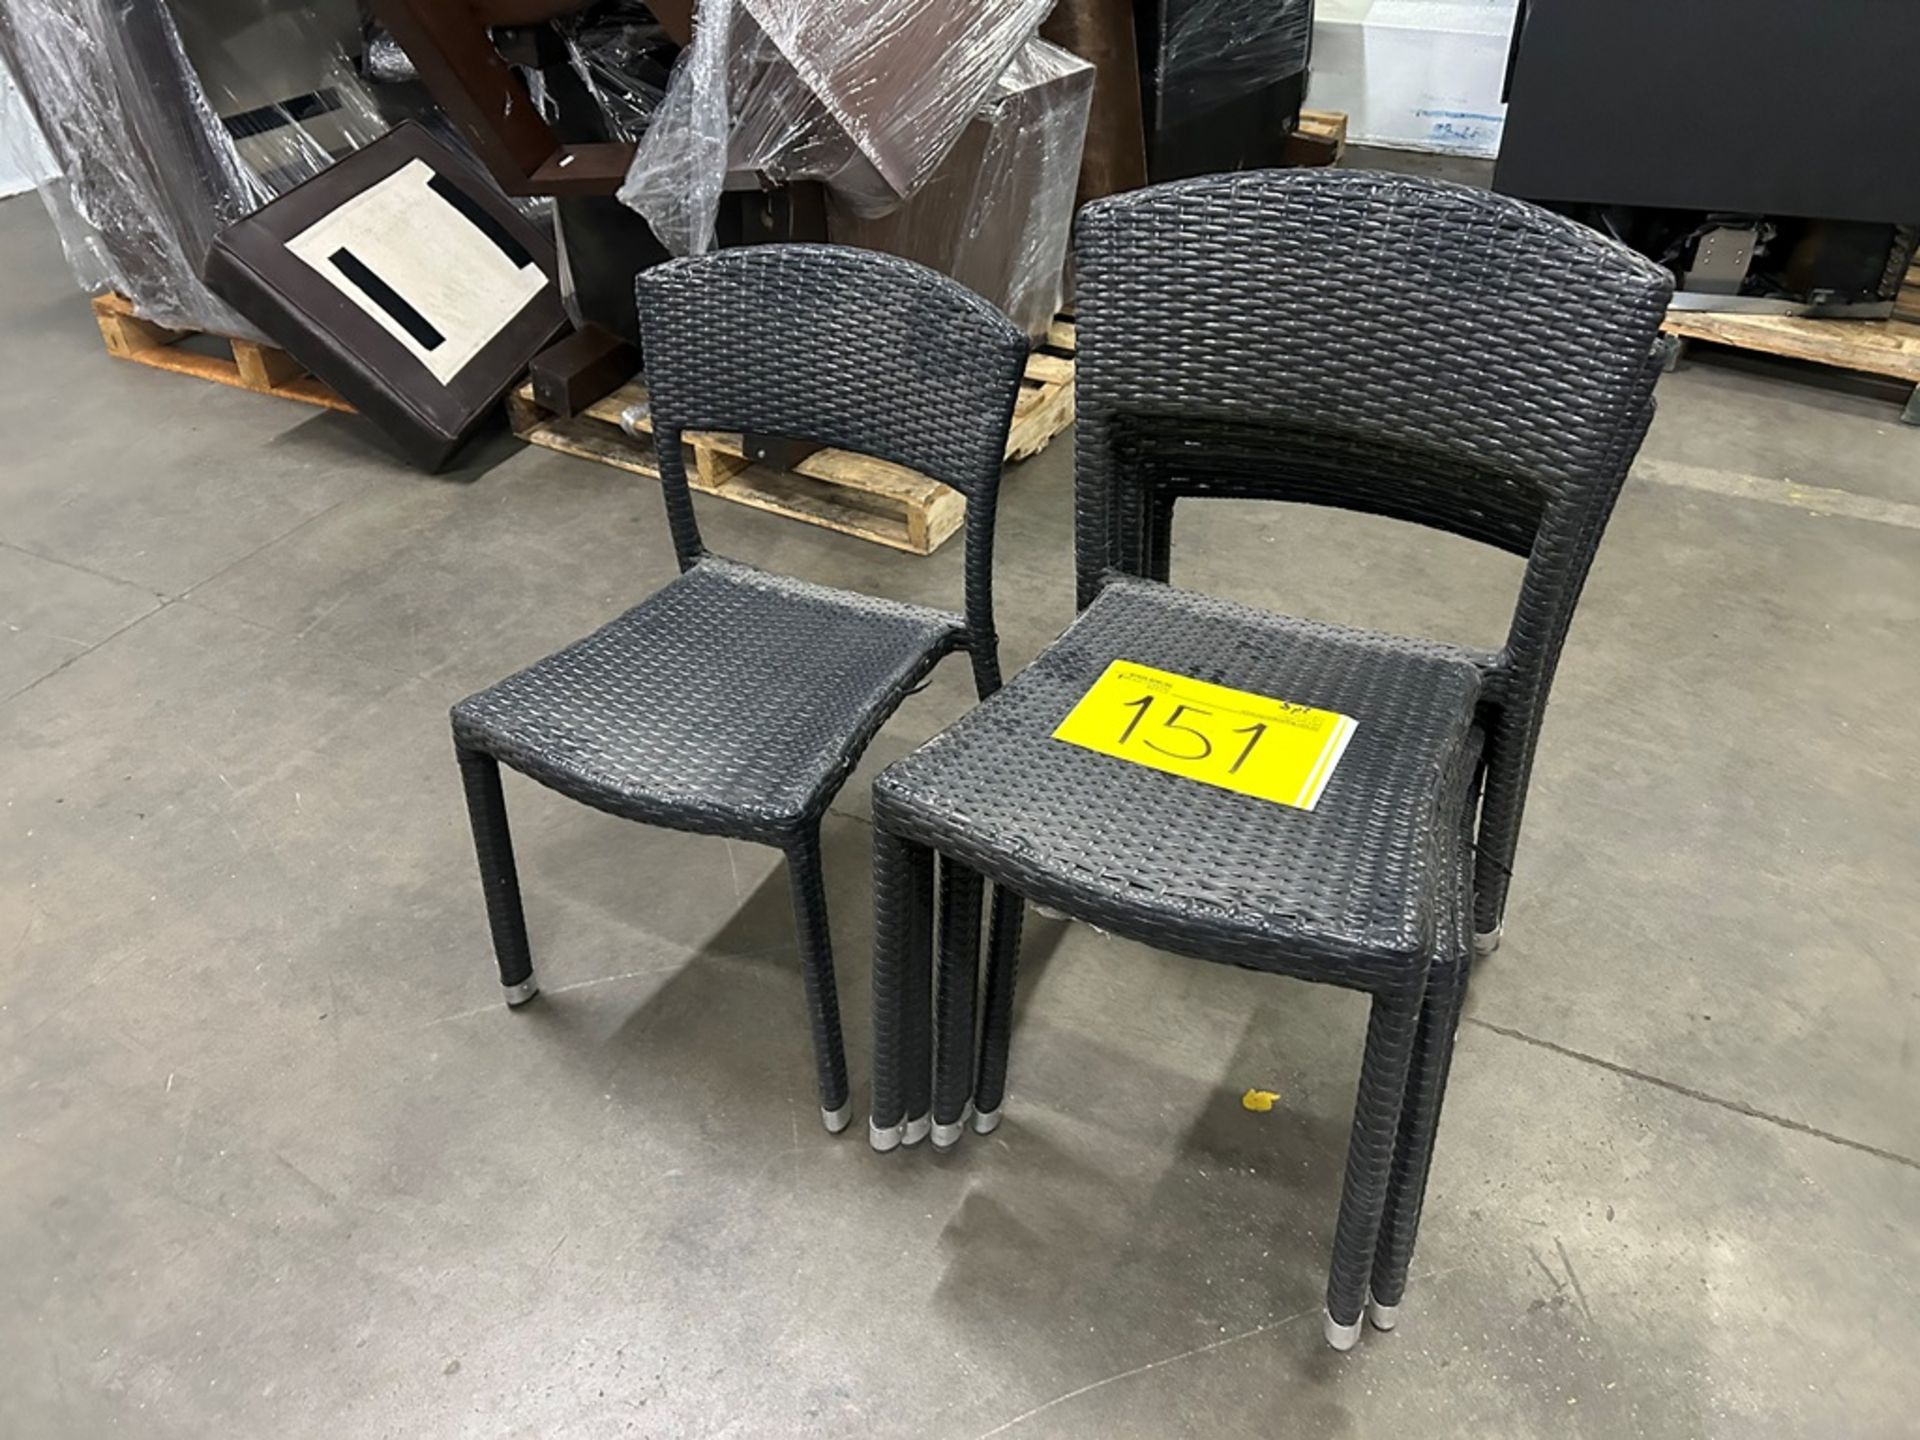 5 sillas de tipo ratán, color negro (Equipo usado) - Image 3 of 5